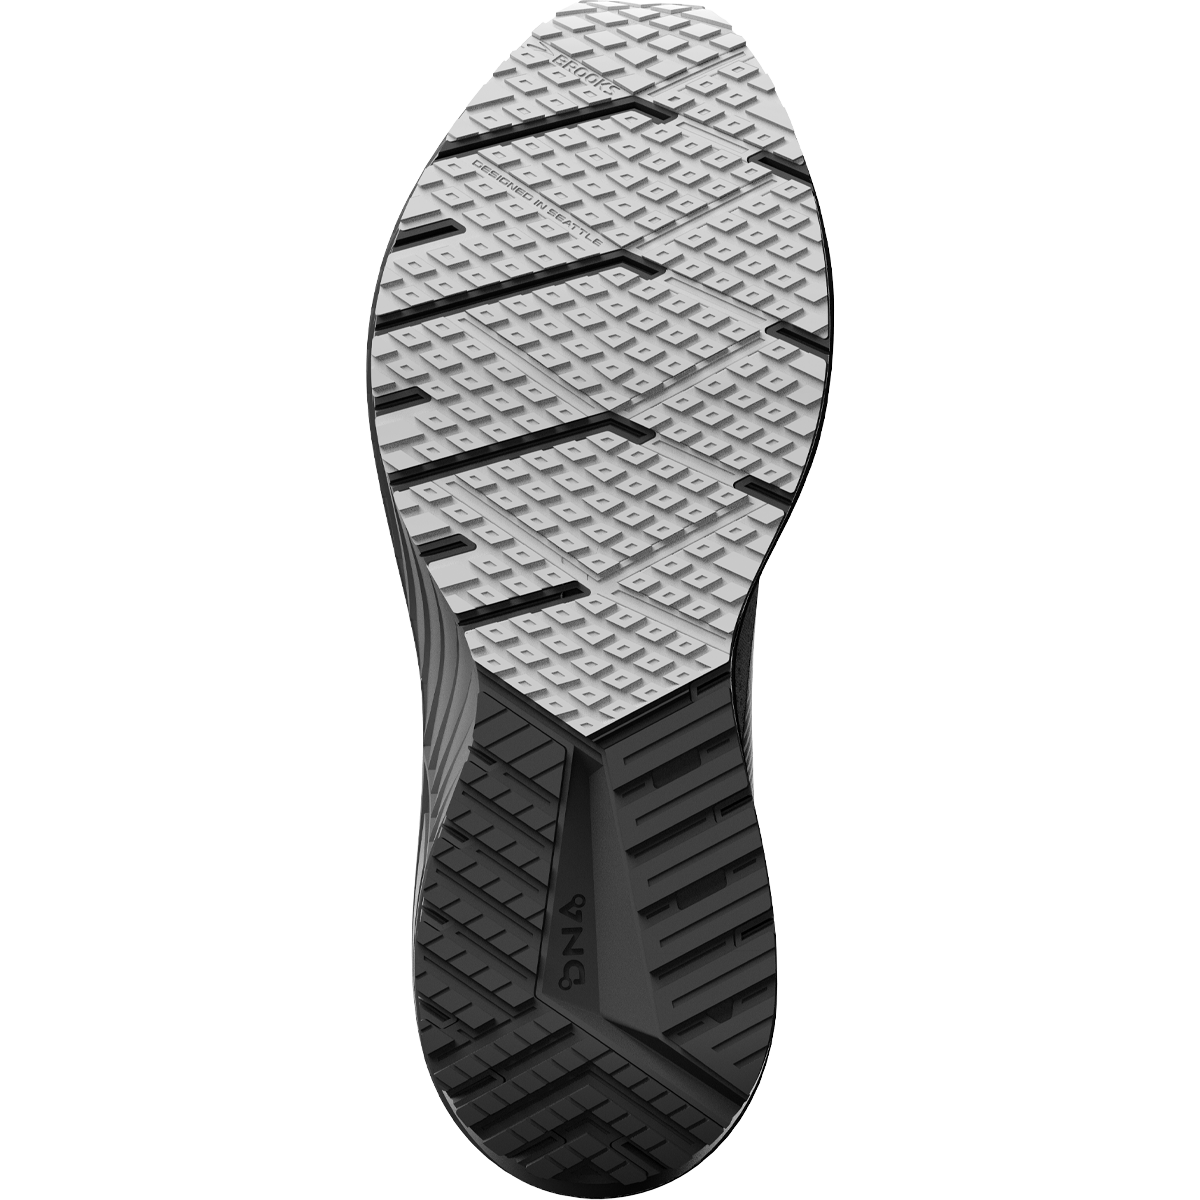  Brooks Men's Revel 6 Neutral Running Shoe - Alloy/Primer  Grey/Oyster - 7 Medium